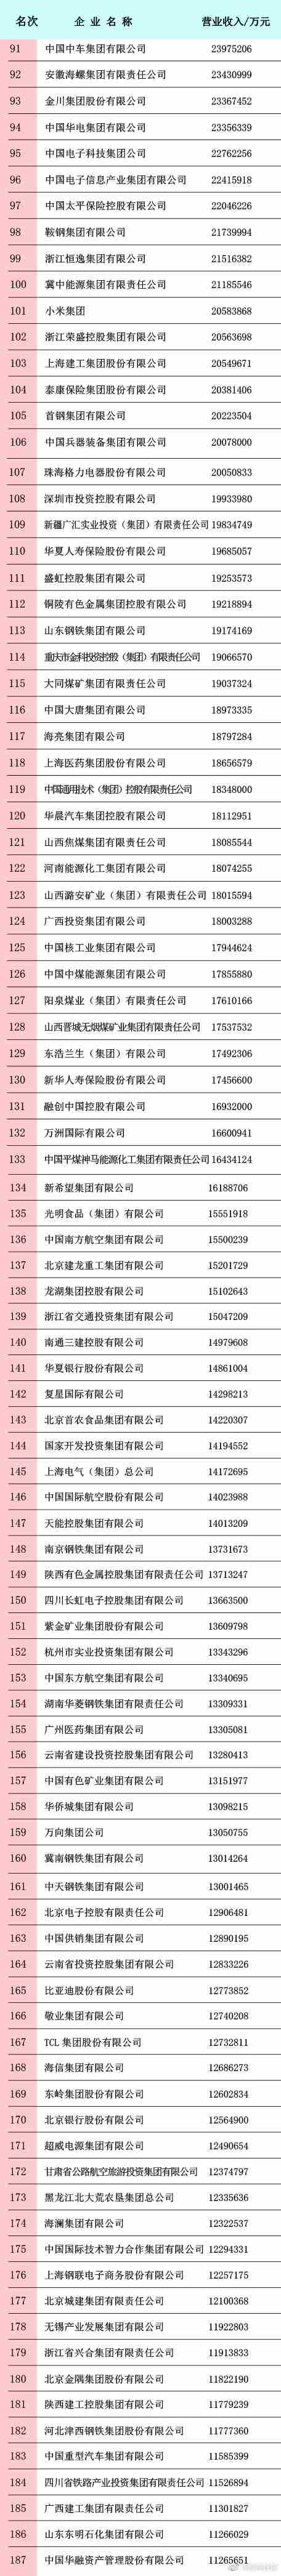 2020中国企业500强发布：华为7.65万件发明专利数排第一